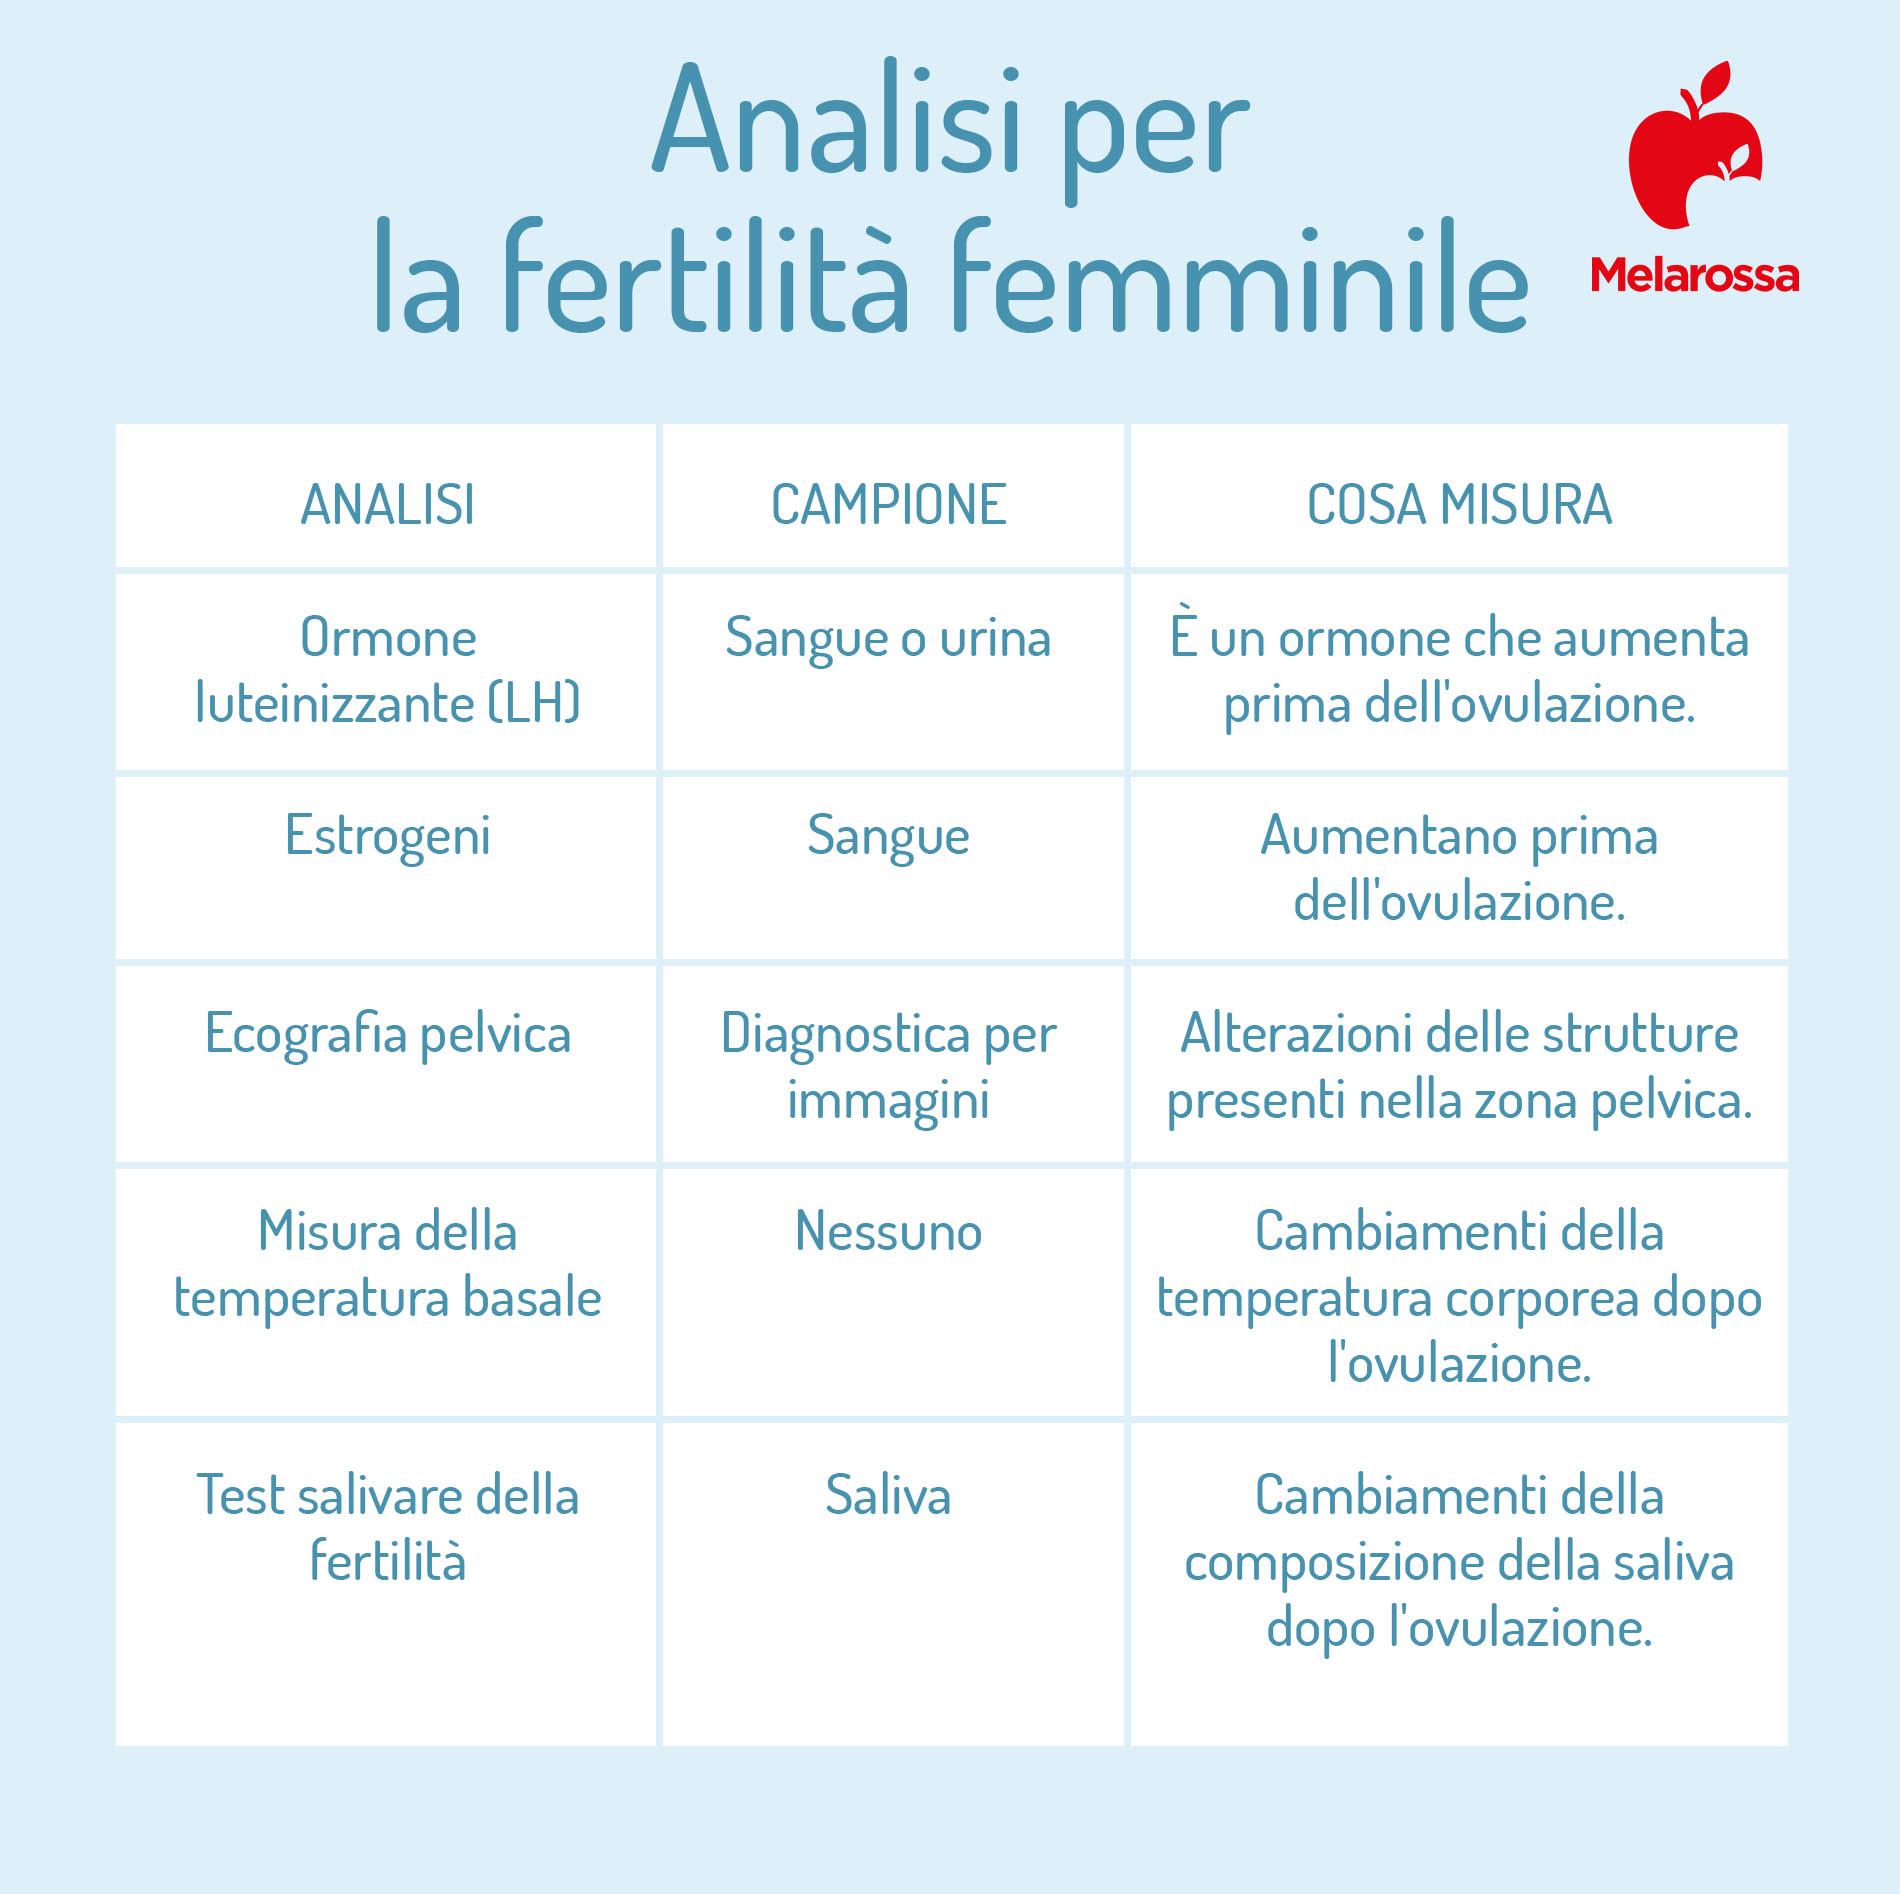 Analisi per la fertilità femminile